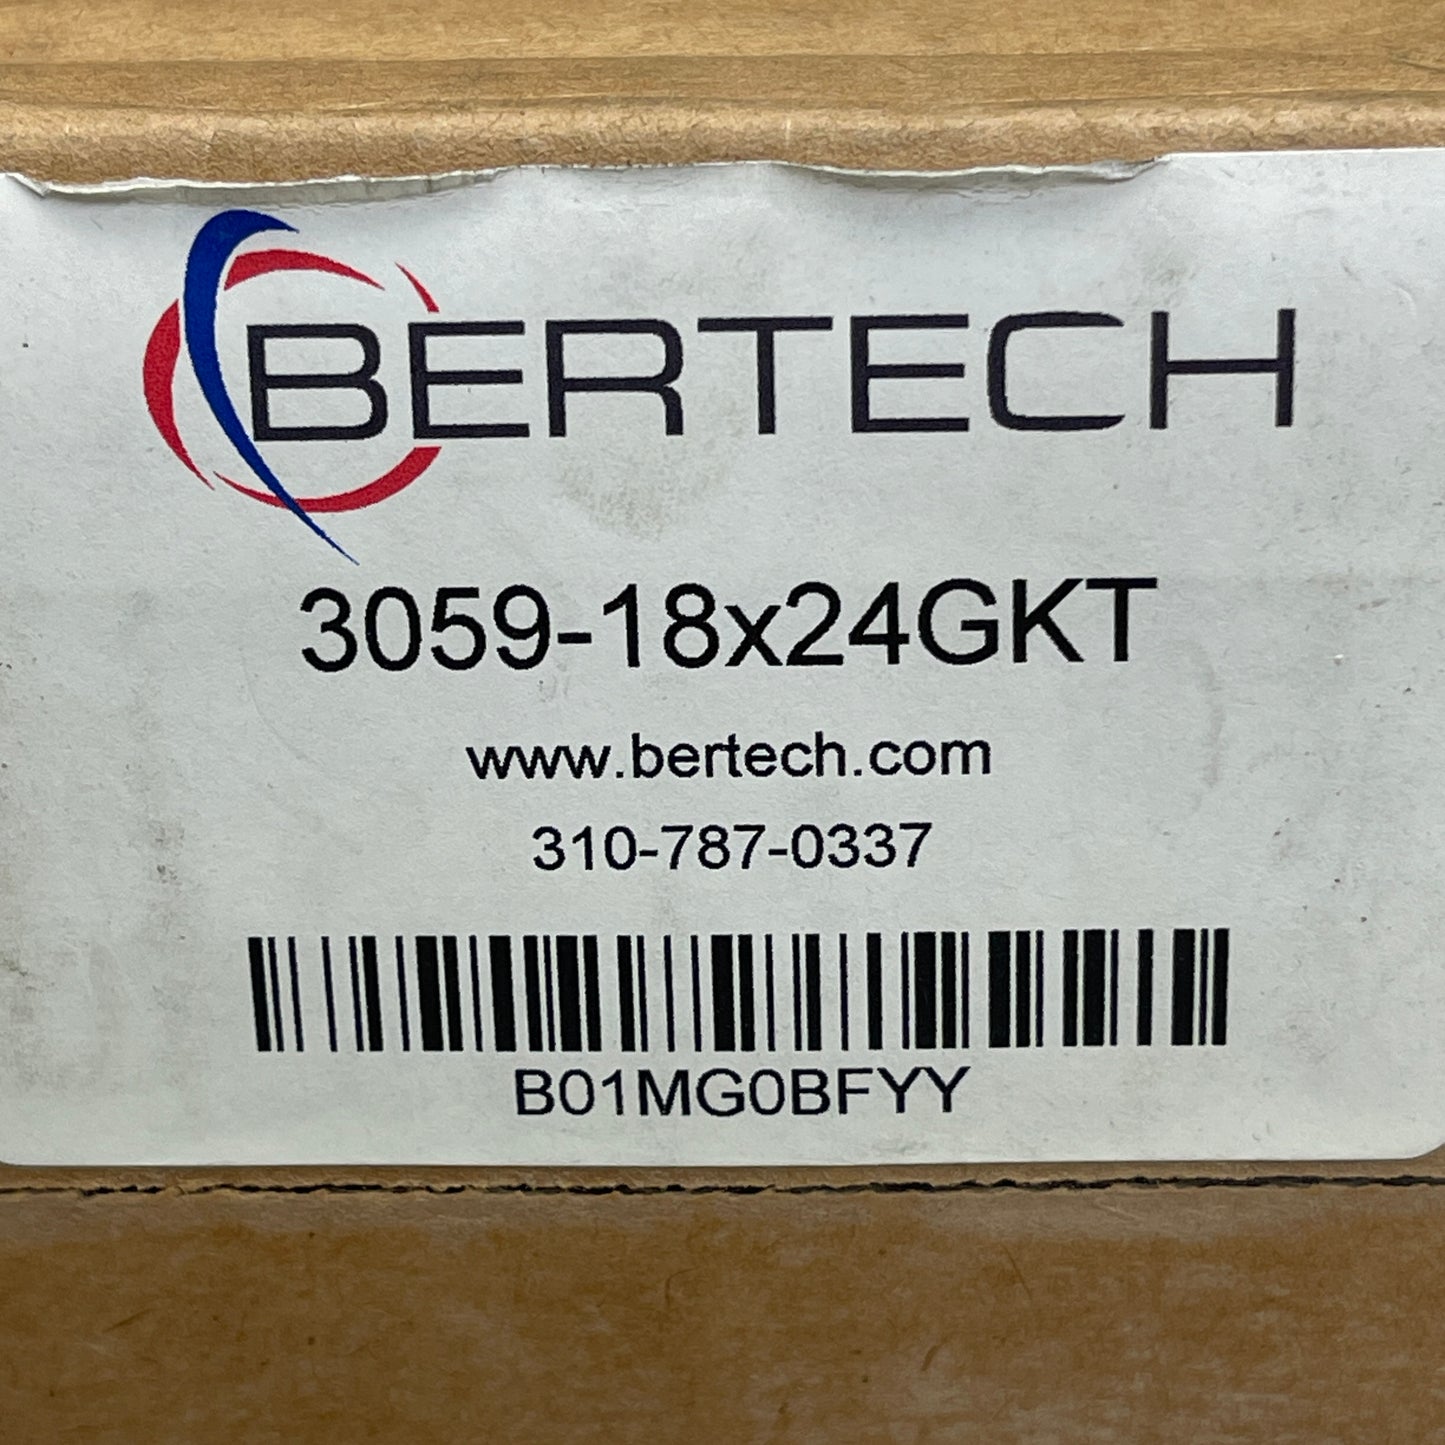 BERTECH ESD Anti-Static Mat Sz 18” x 24” Dark Grey 2059T-18x24BKT